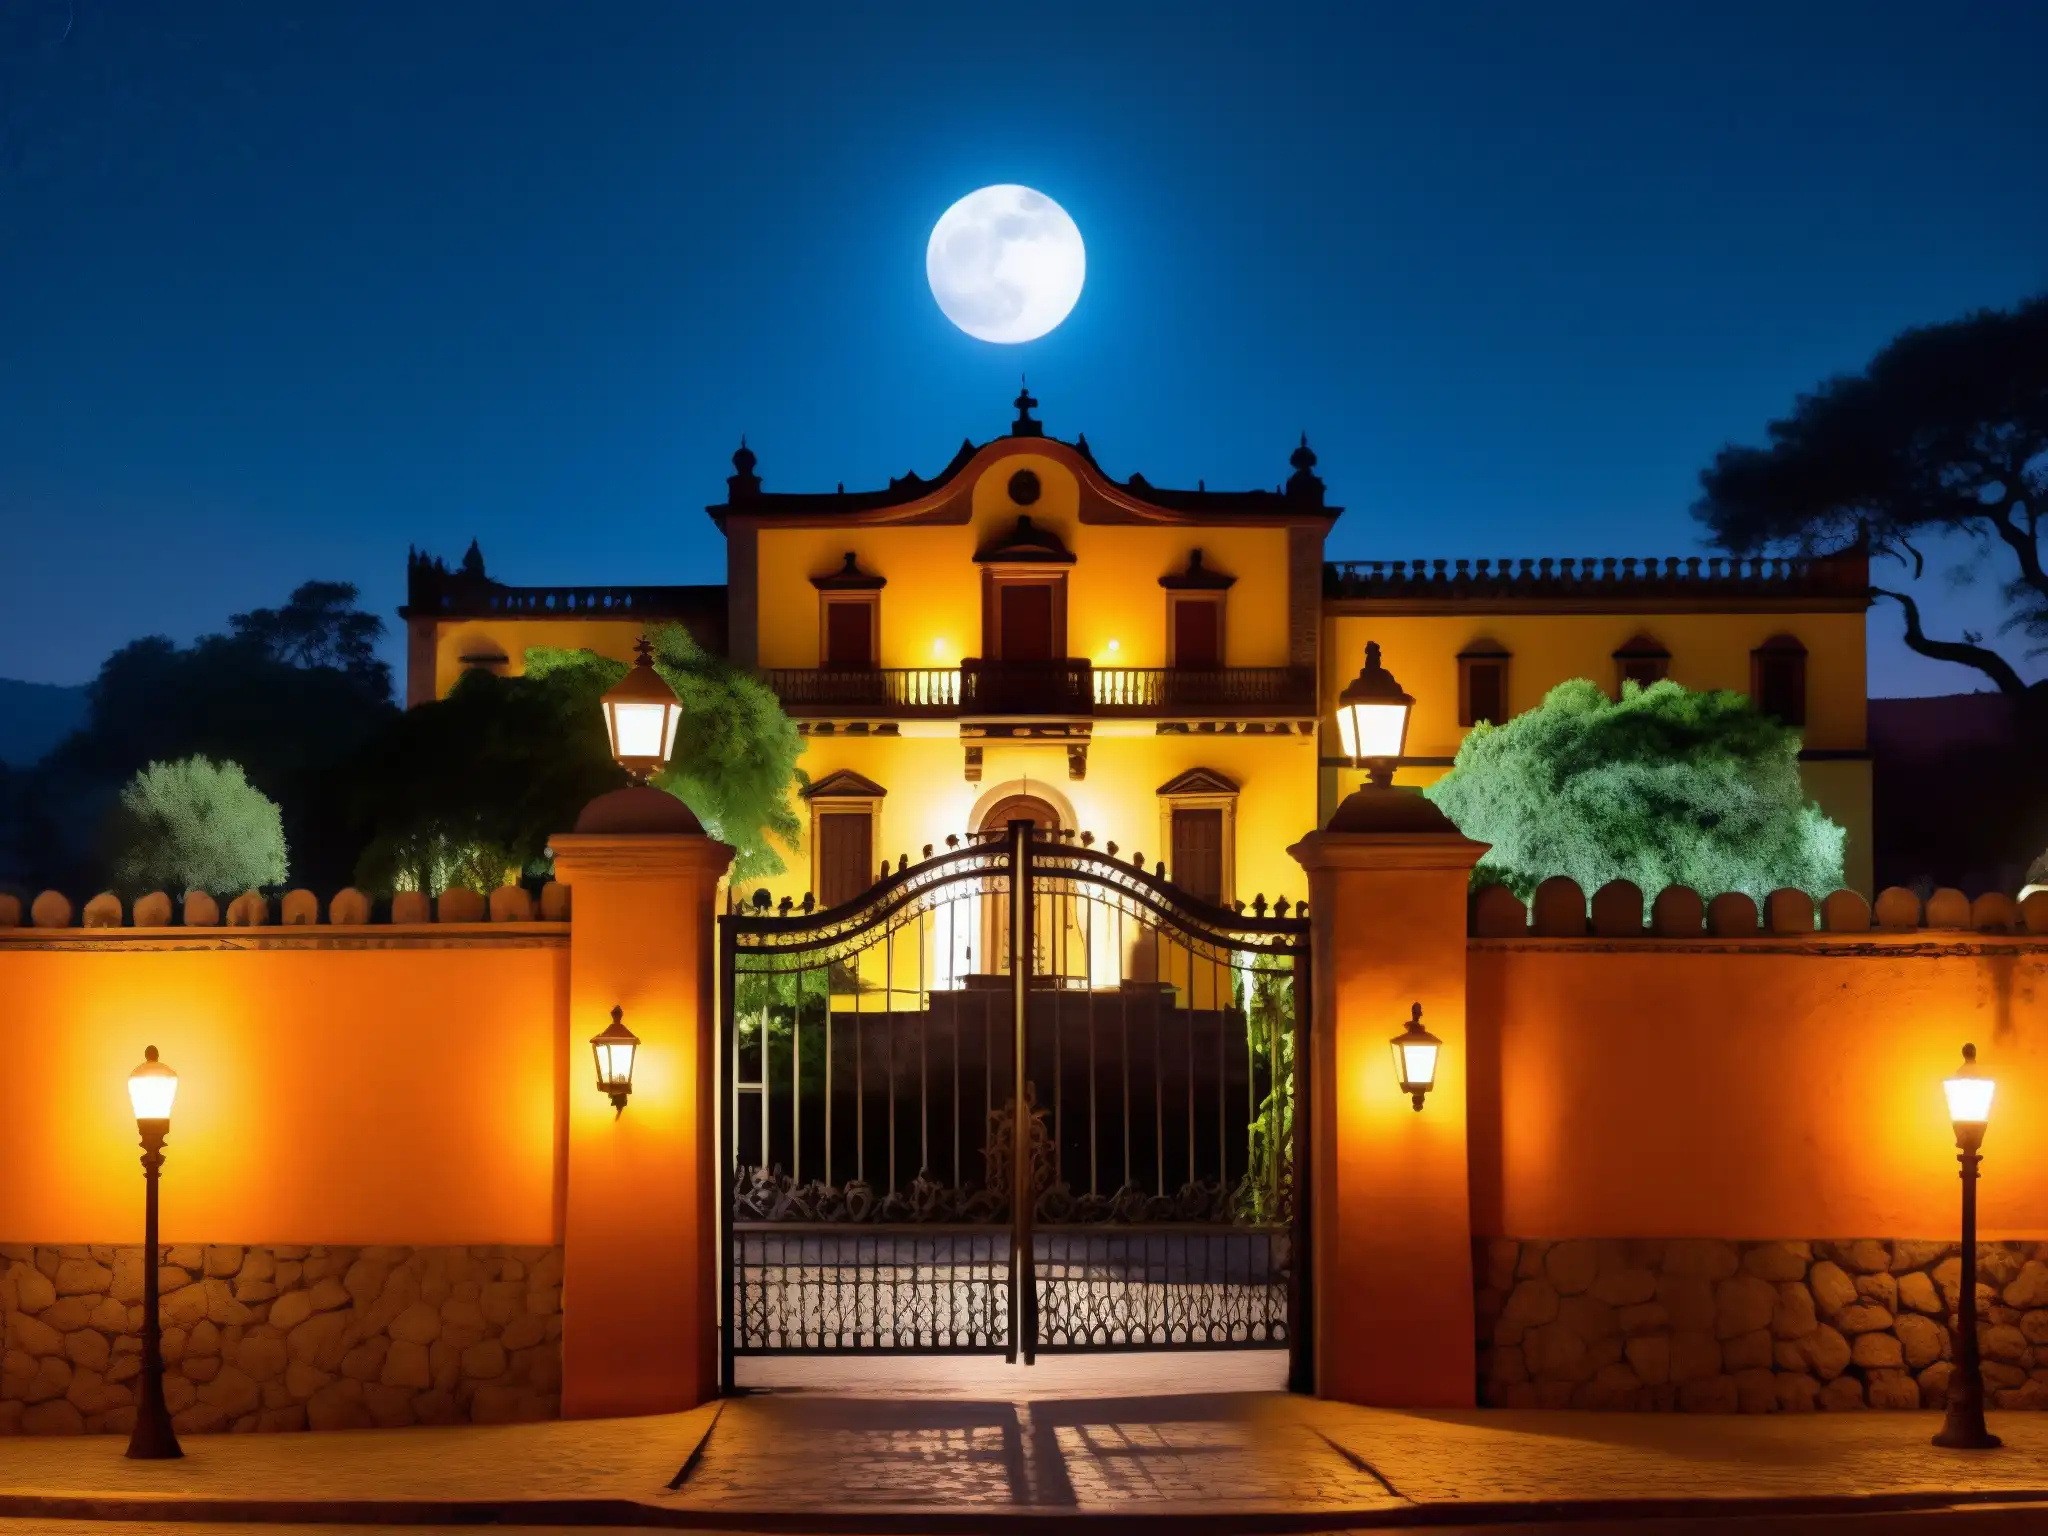 Majestuosa mansión de la leyenda de la Zacatecana en Querétaro, iluminada por la luna, con un aura de misterio y crimen pasional